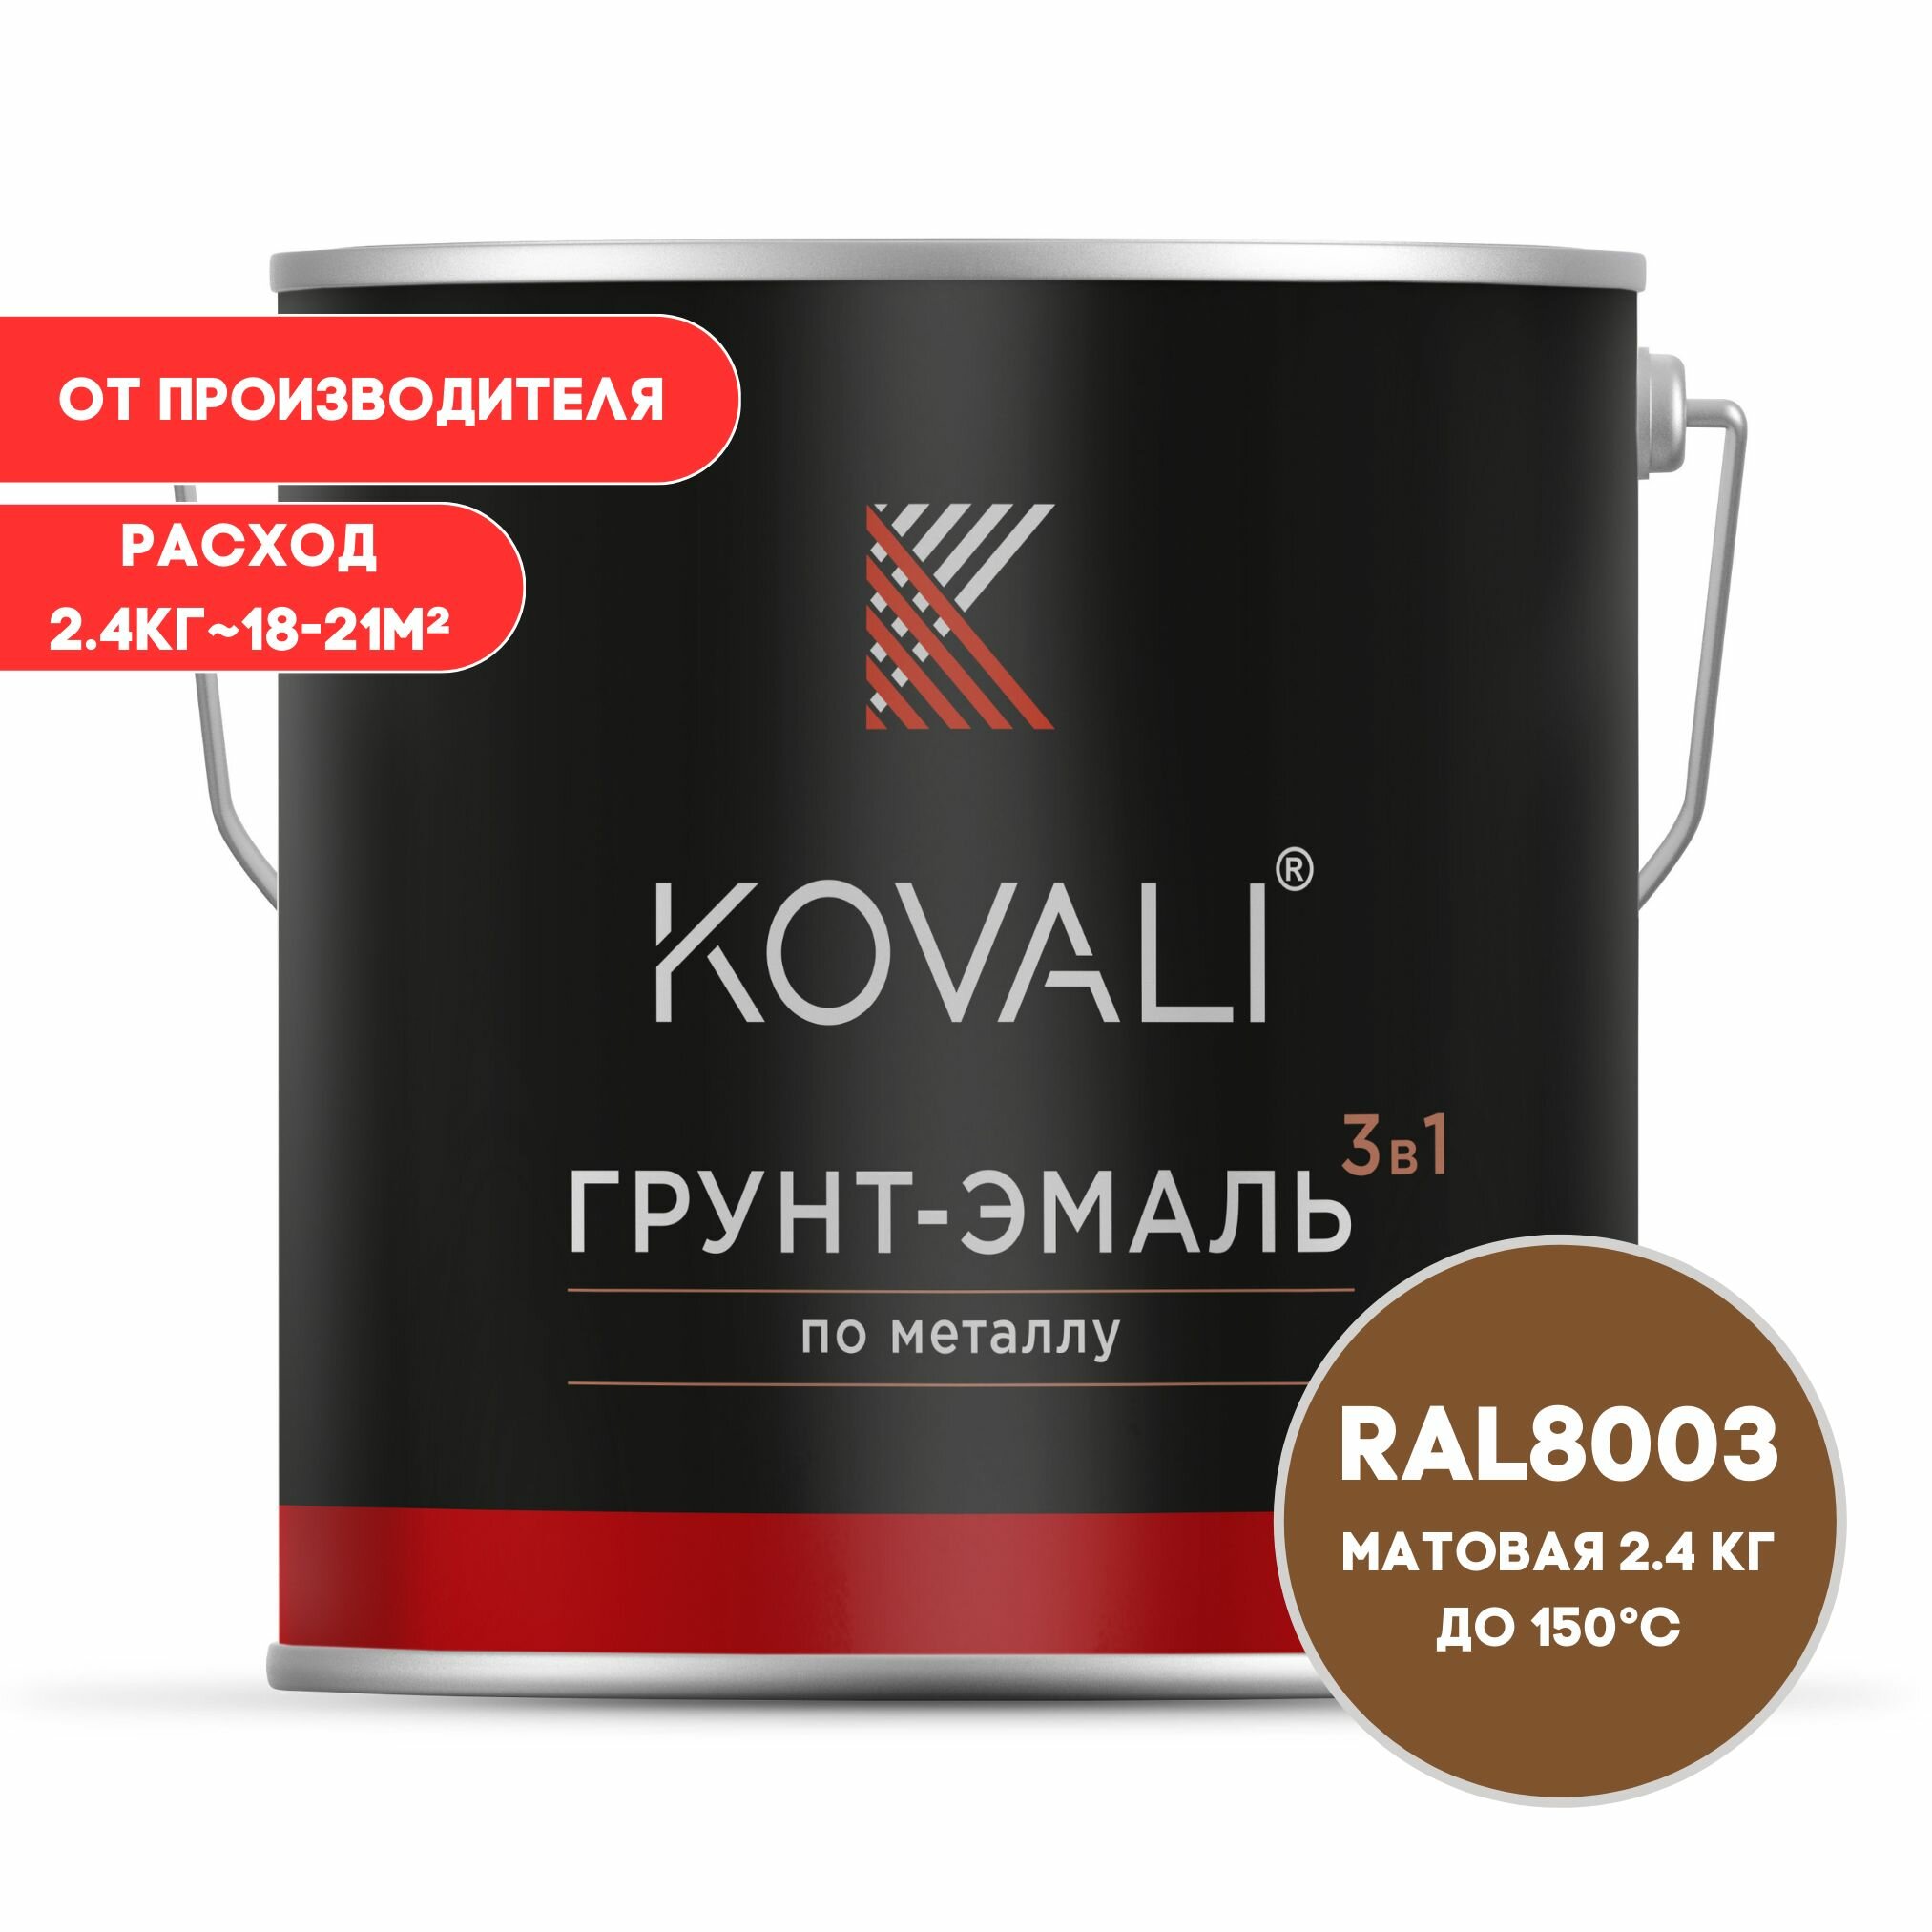 Грунт-эмаль 3 в 1 KOVALI матовая Глиняный коричневый RAL 8003 2.4 кг краска по металлу по ржавчине быстросохнущая